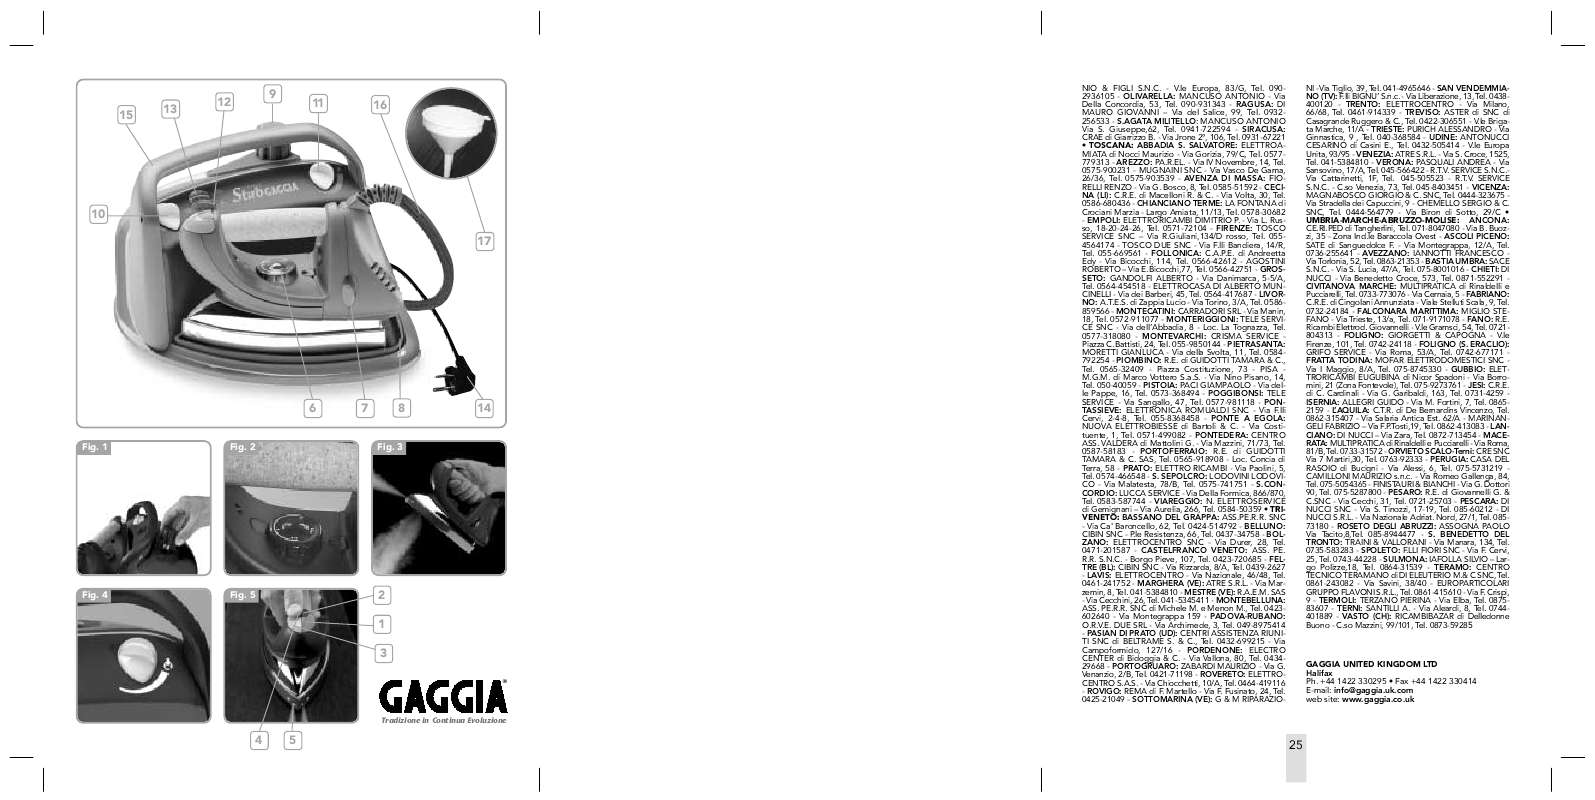 Guide utilisation GAGGIA STIRO GAGGIA CLASSIC de la marque GAGGIA